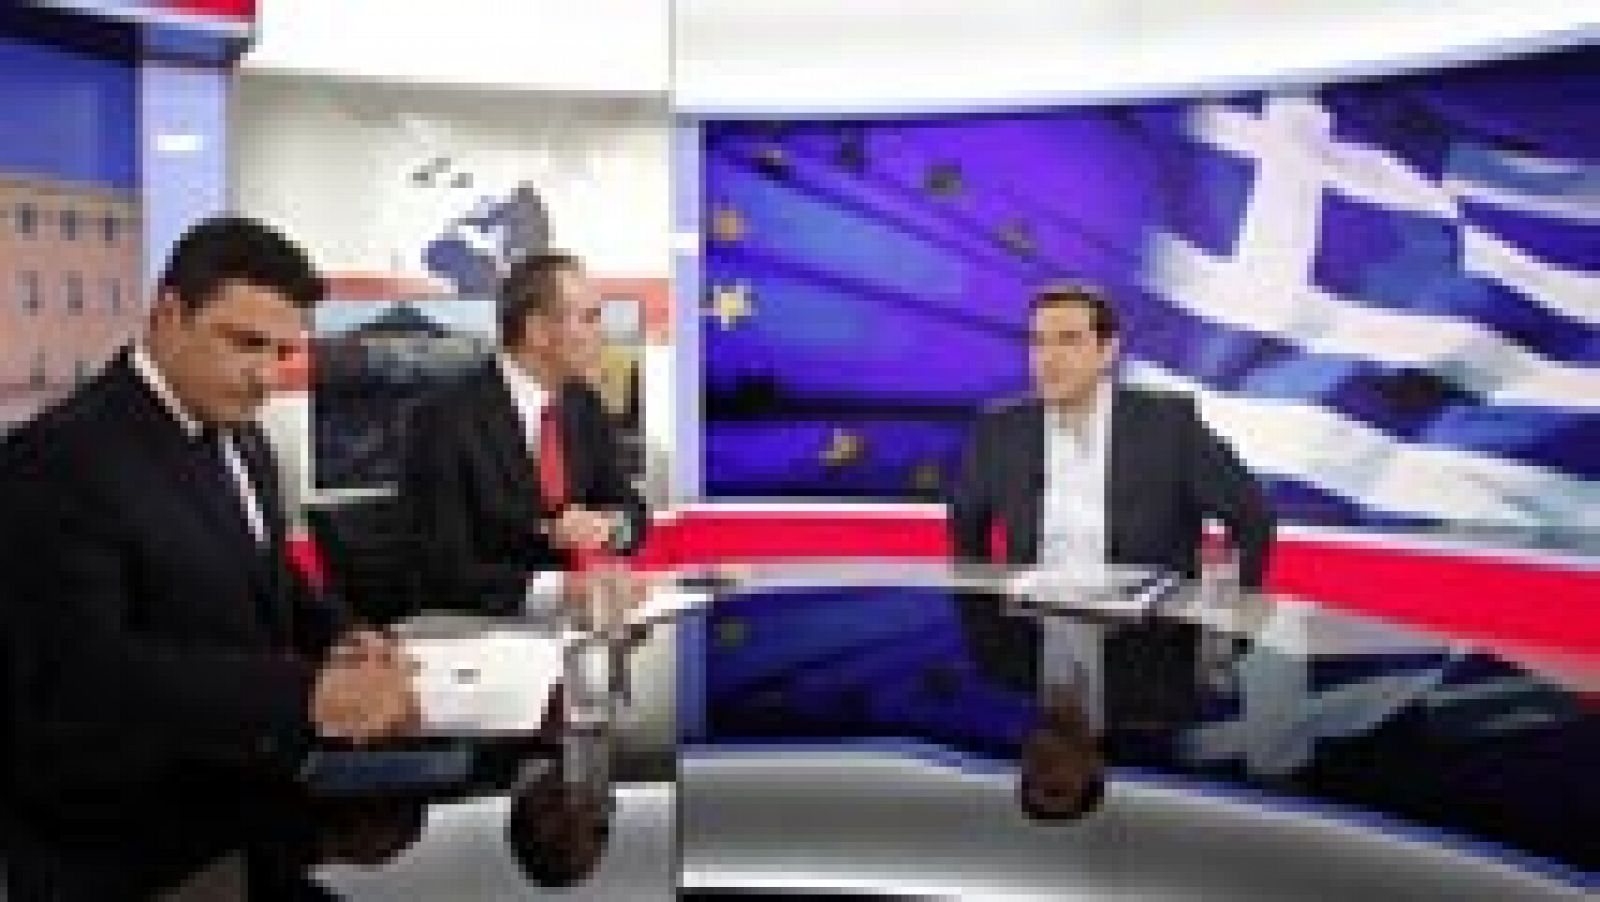 Crisis griega - Tsipras: "Cuanto más fuerte sea el no, mayores serán las posibilidades" de lograr un buen acuerdo